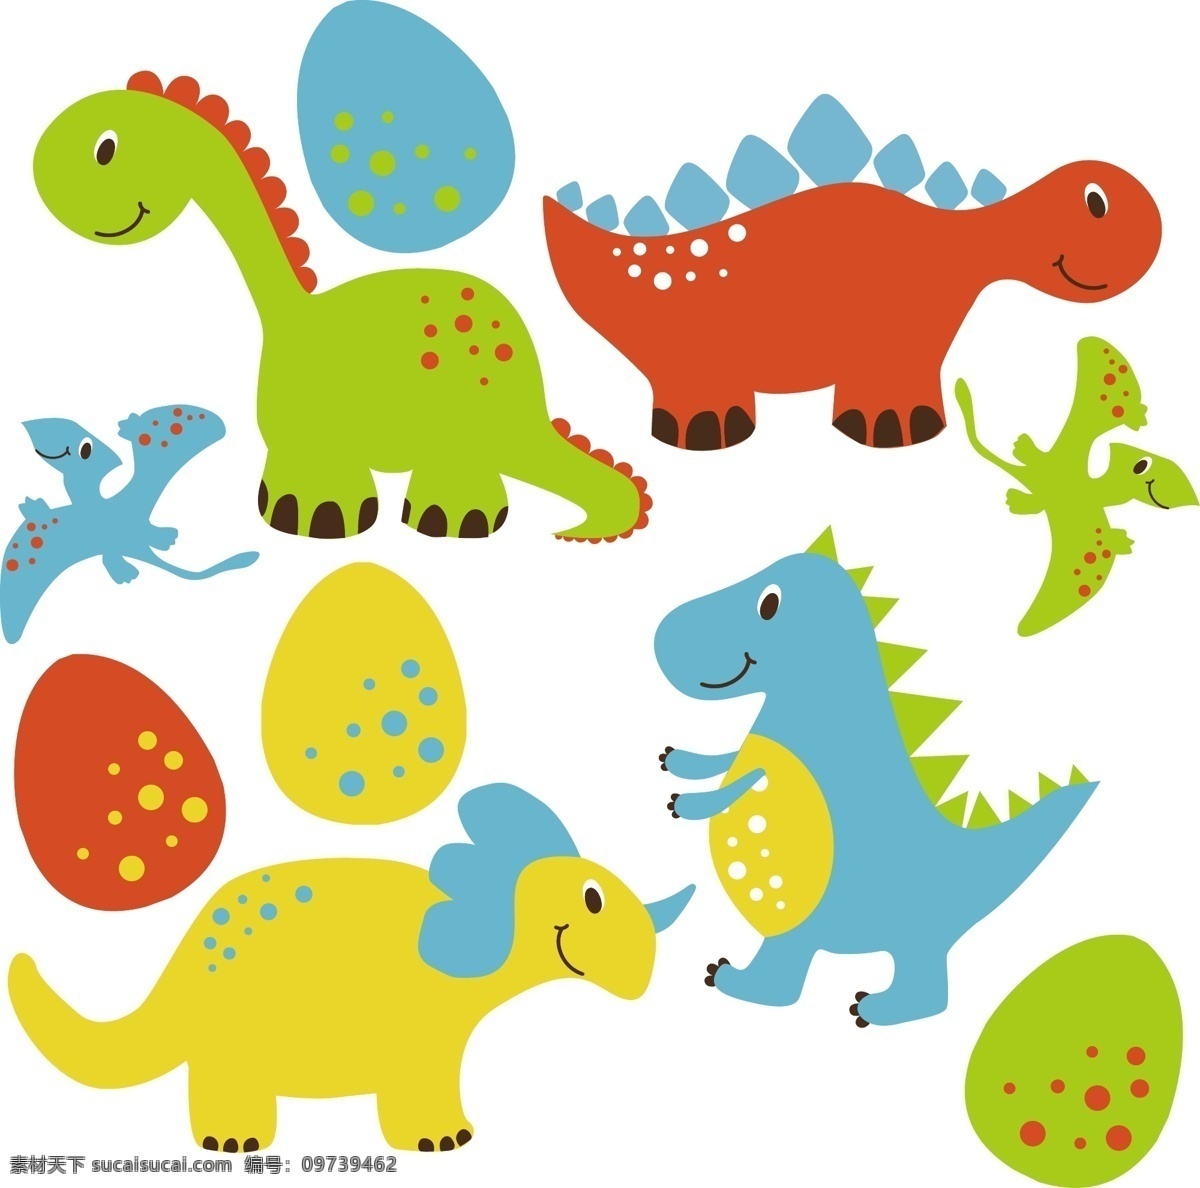 款 卡通 恐龙 恐龙蛋 矢量 长颈龙 爬行动物 翼龙 动物 矢量图 卡通动物 动物设计